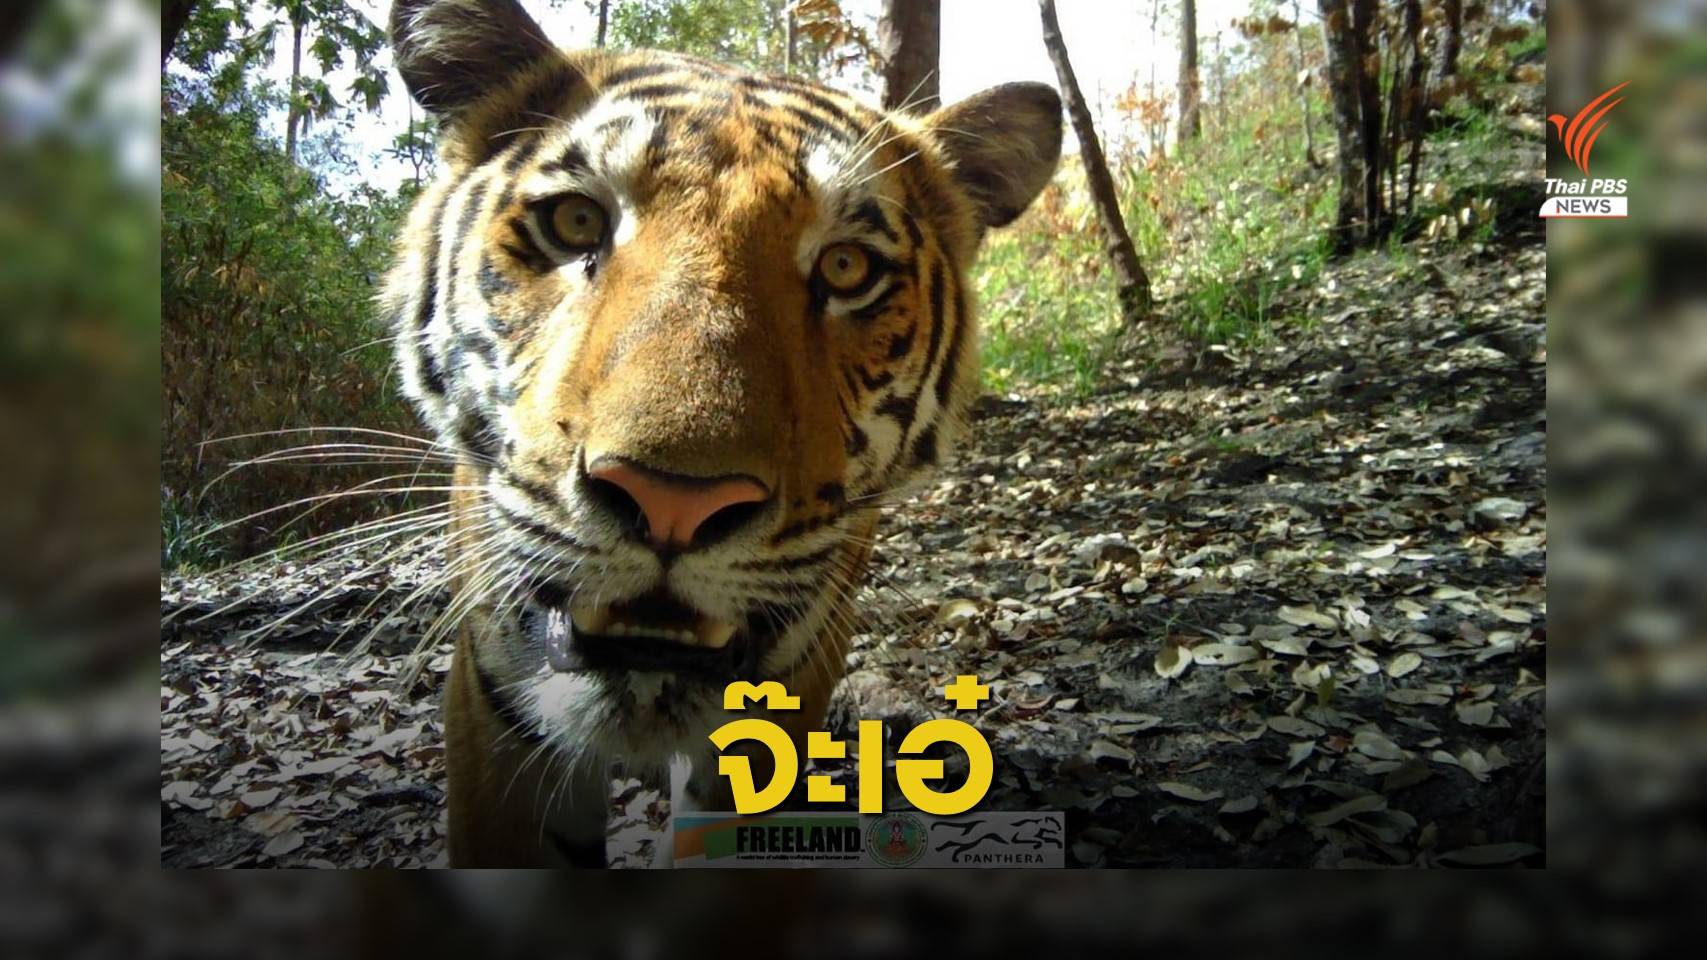 "เสือโคร่ง" อุทยานฯ เขาแหลม โชว์ตัวหน้ากล้องดักถ่ายสัตว์ป่า